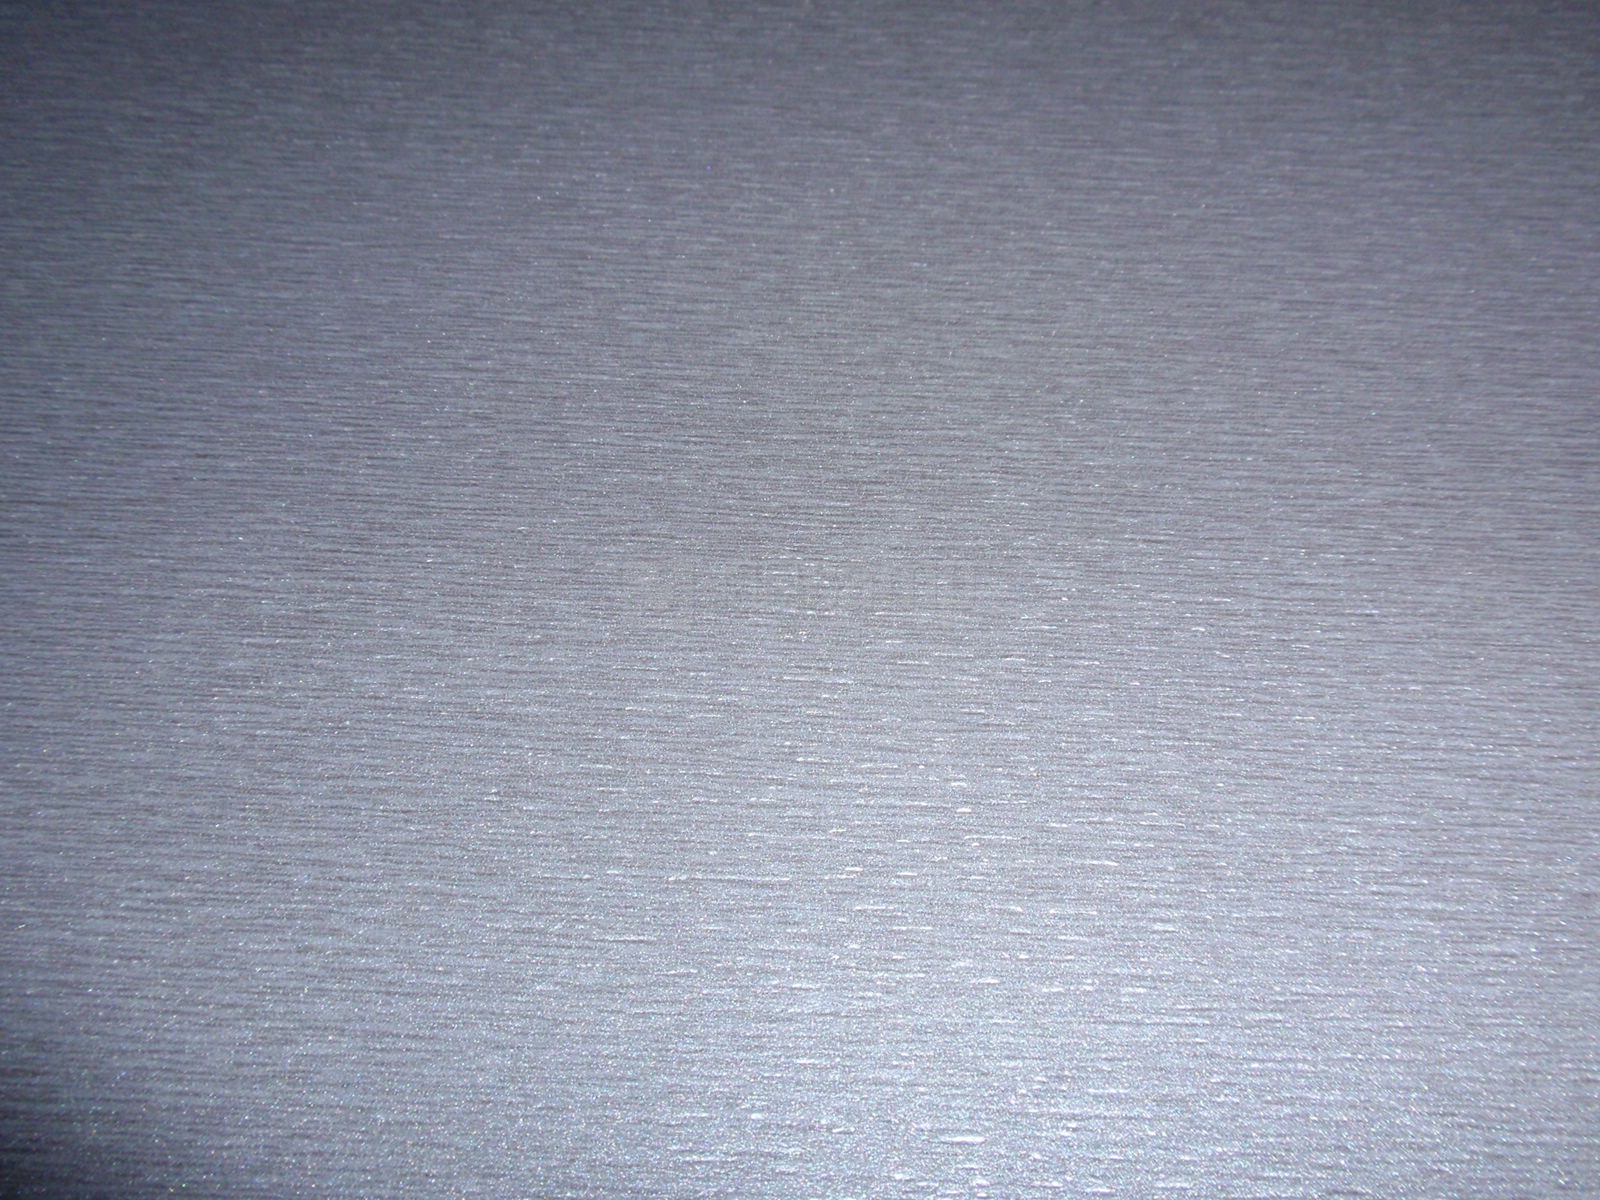 Houtplaat Aluminium kleur Titan 3mm 2440 x 1220 prijs voor hele plaat  2,98m2